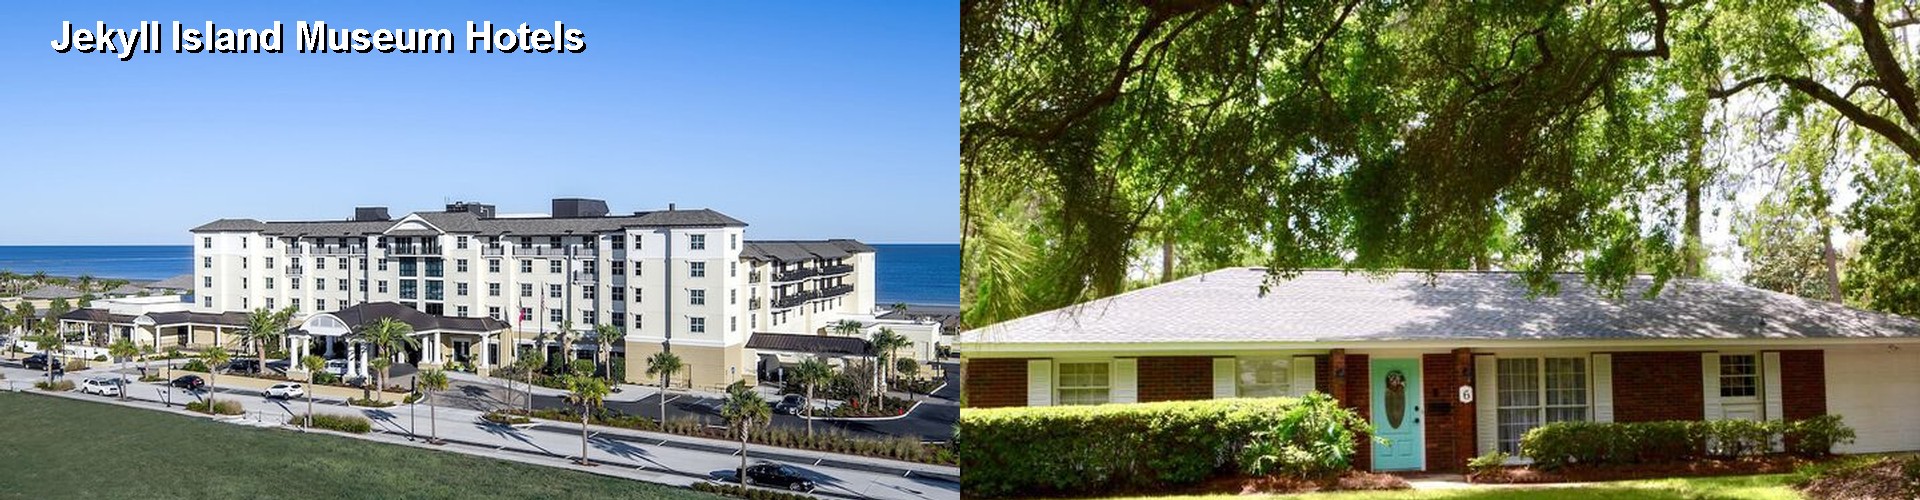 5 Best Hotels near Jekyll Island Museum